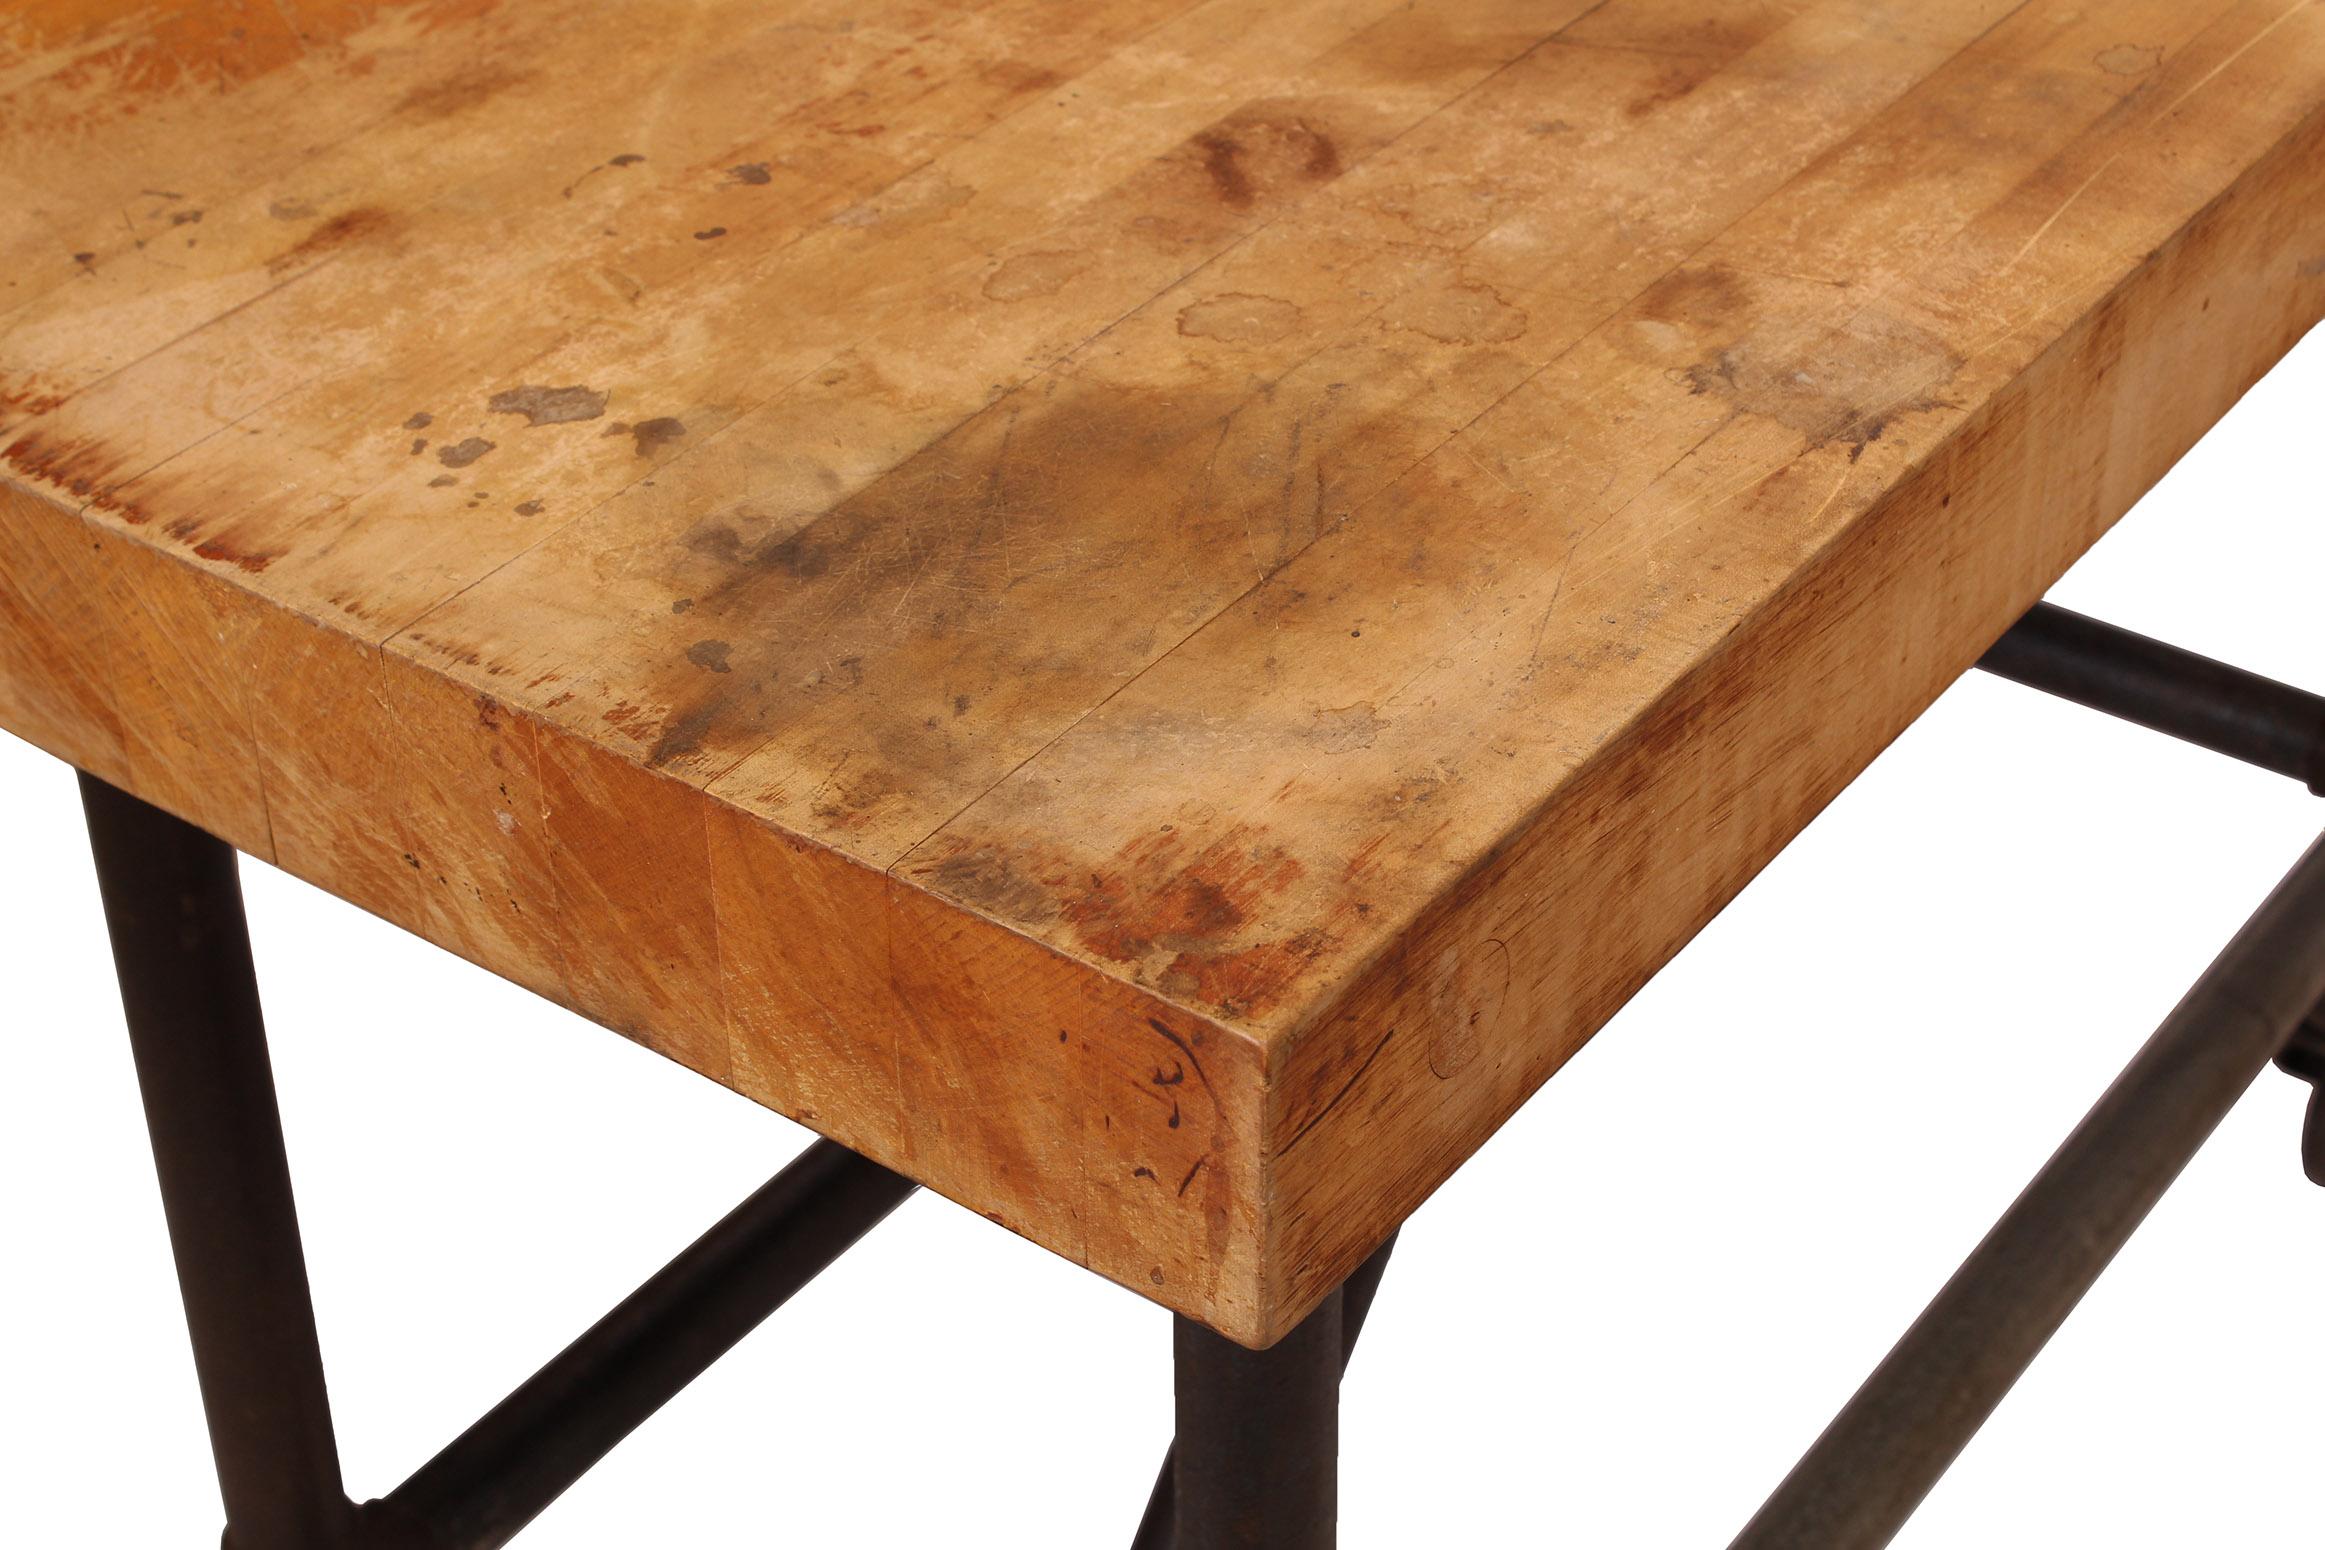 Wood Original American Industrial Butcher Block Pipe Table / Bar Cart